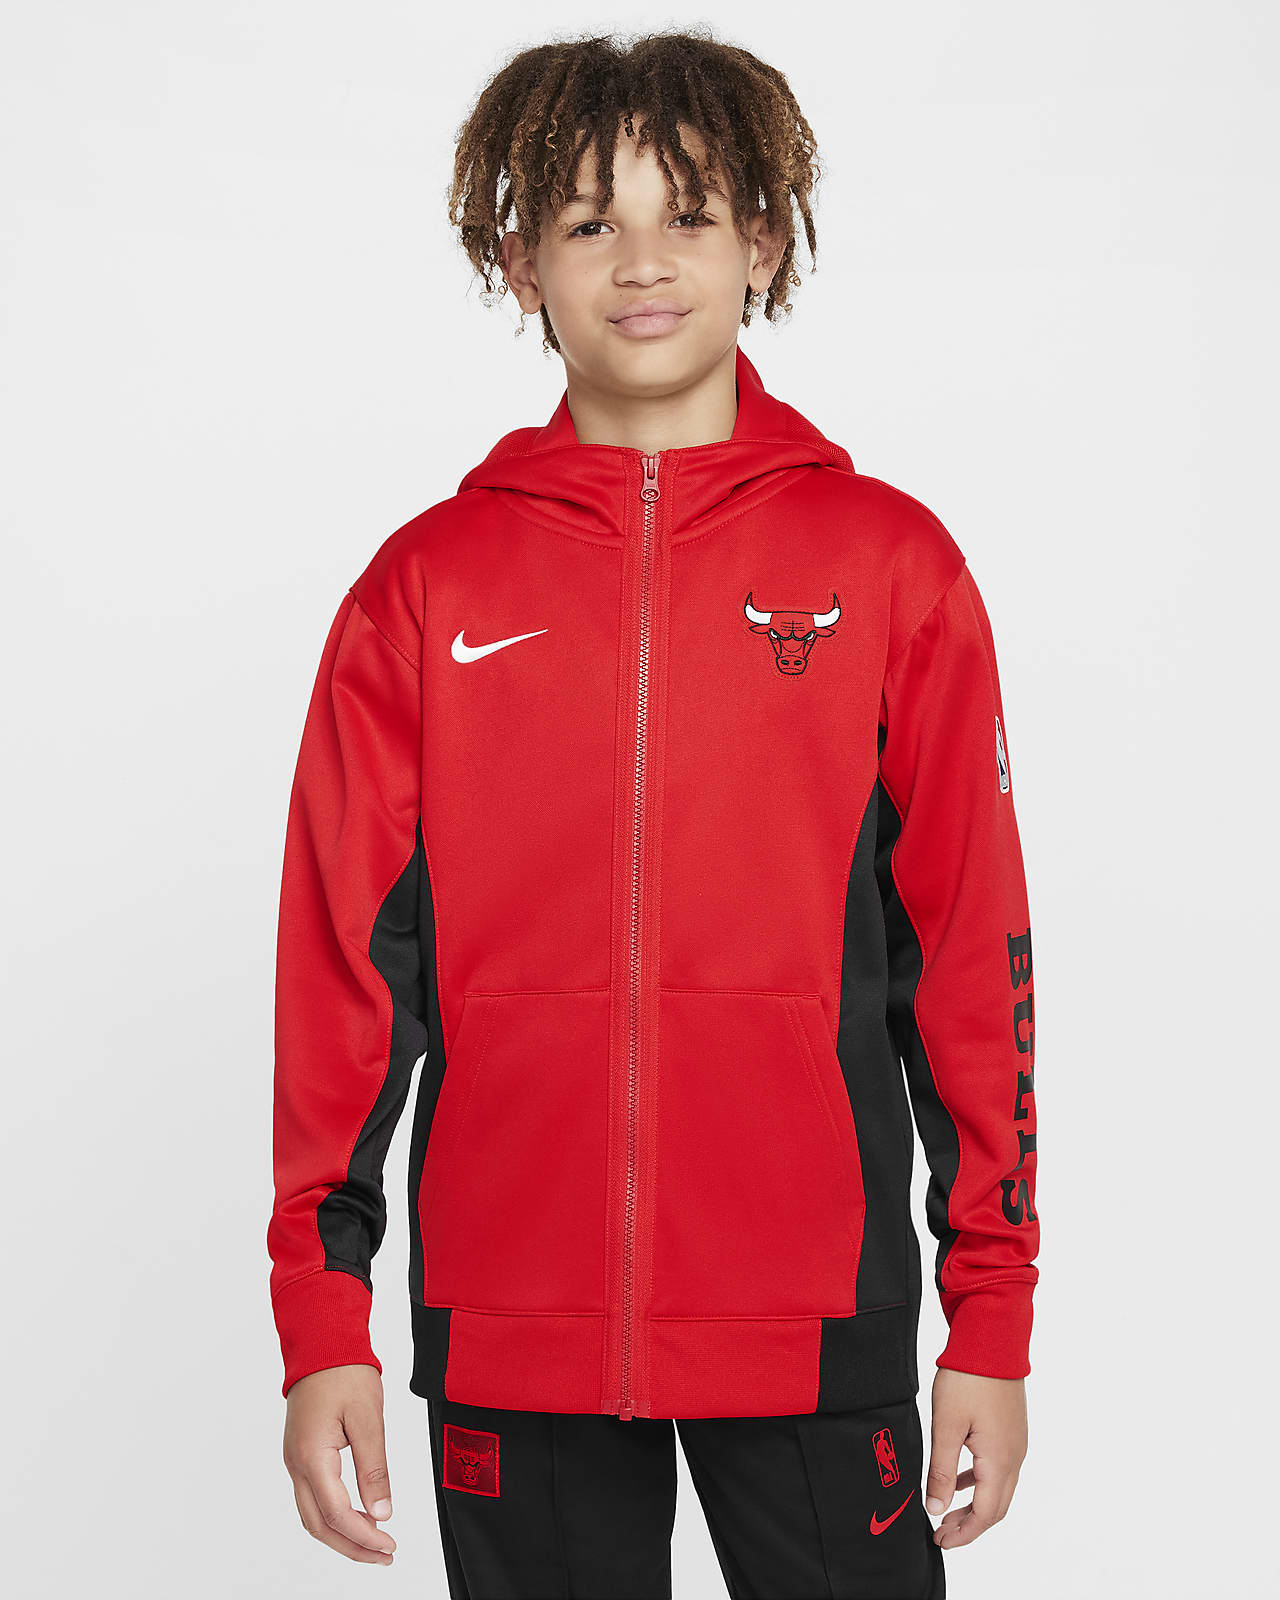 Chicago Bulls Showtime Sudadera con capucha y cremallera completa Nike Dri-FIT de la NBA - Niño/a